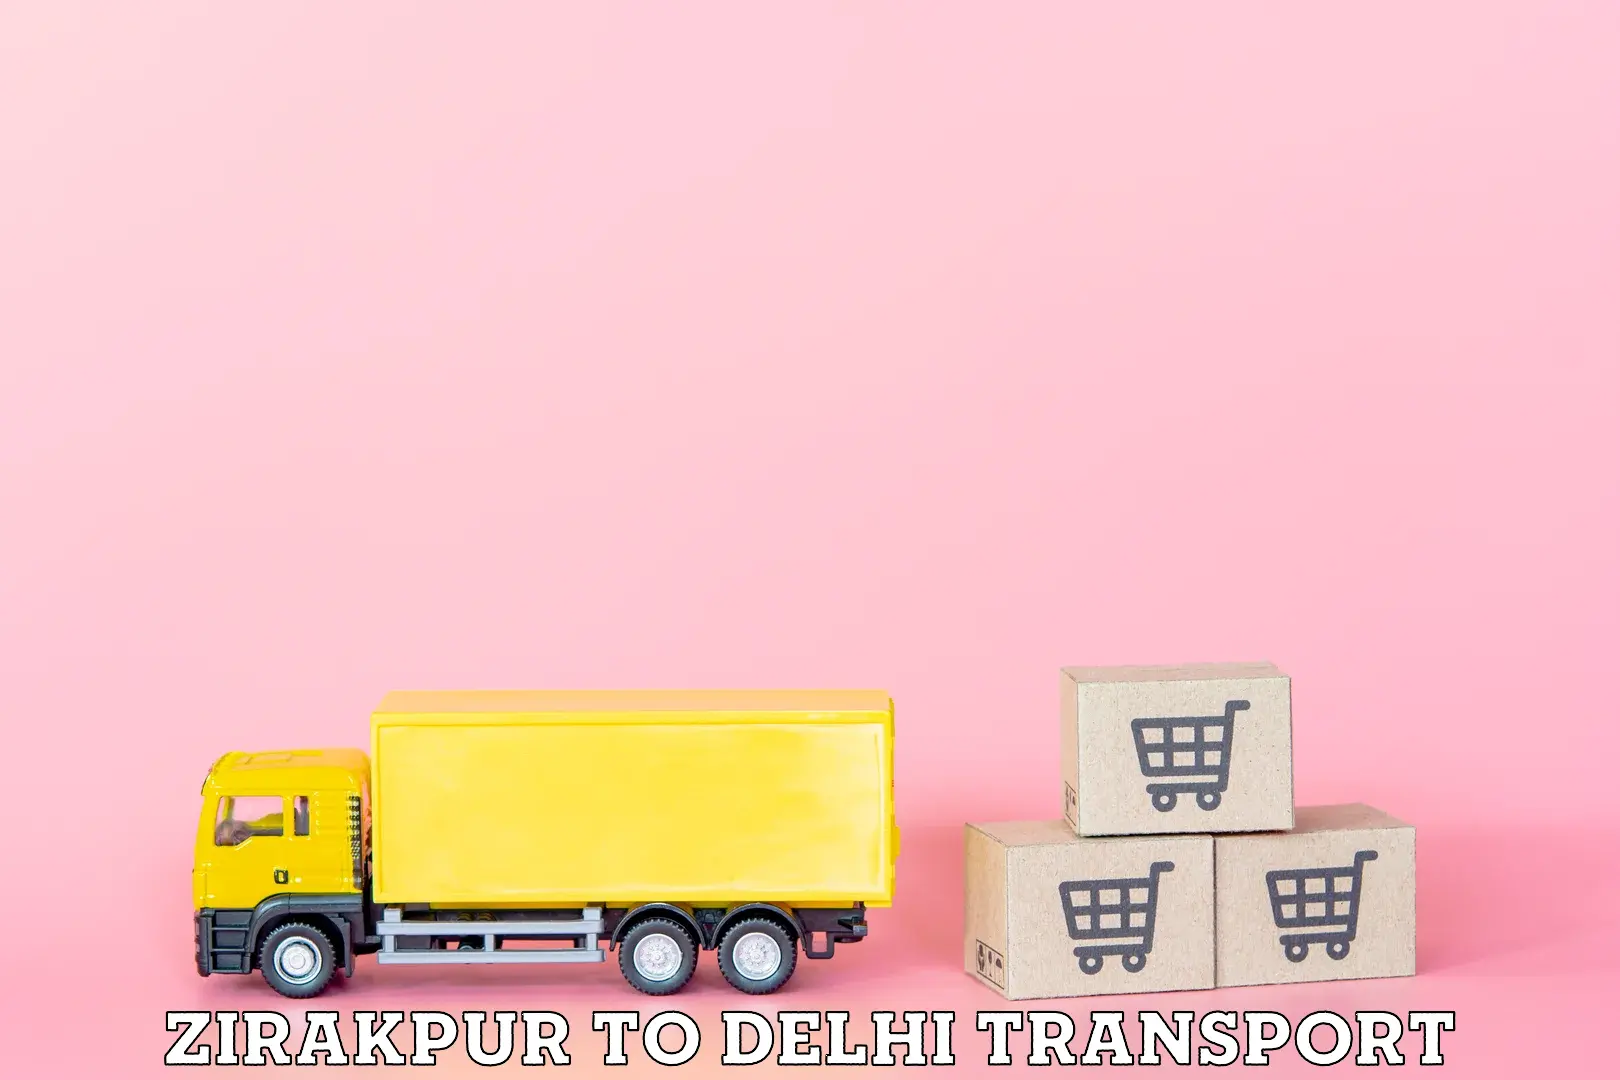 Express transport services Zirakpur to Jamia Millia Islamia New Delhi